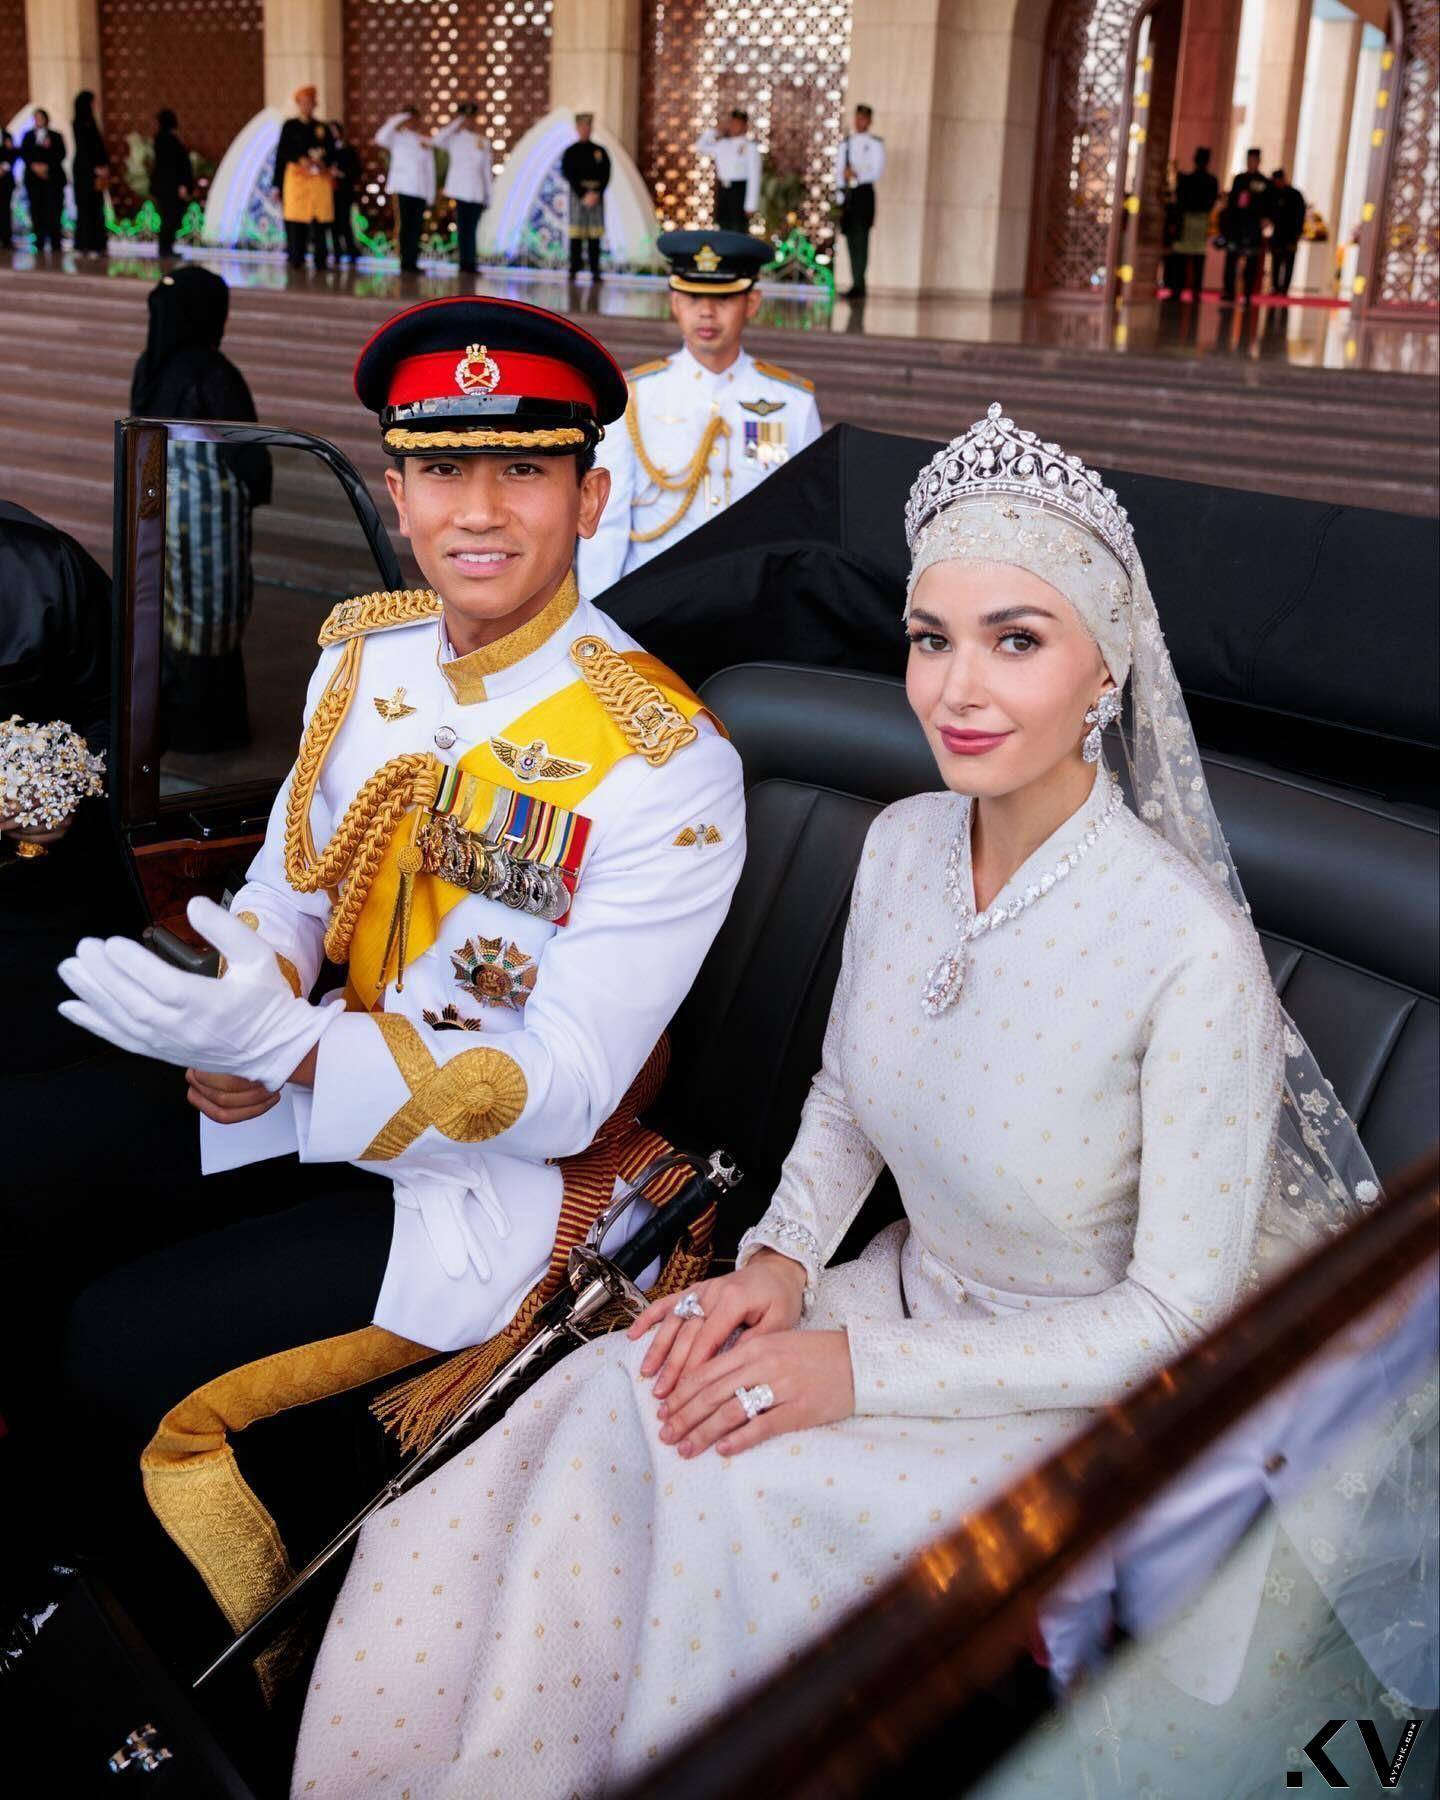 汶莱“亚洲最帅王子”狂爱“表王”有洋葱　面盘绘有家乡地图 名人名流 图3张